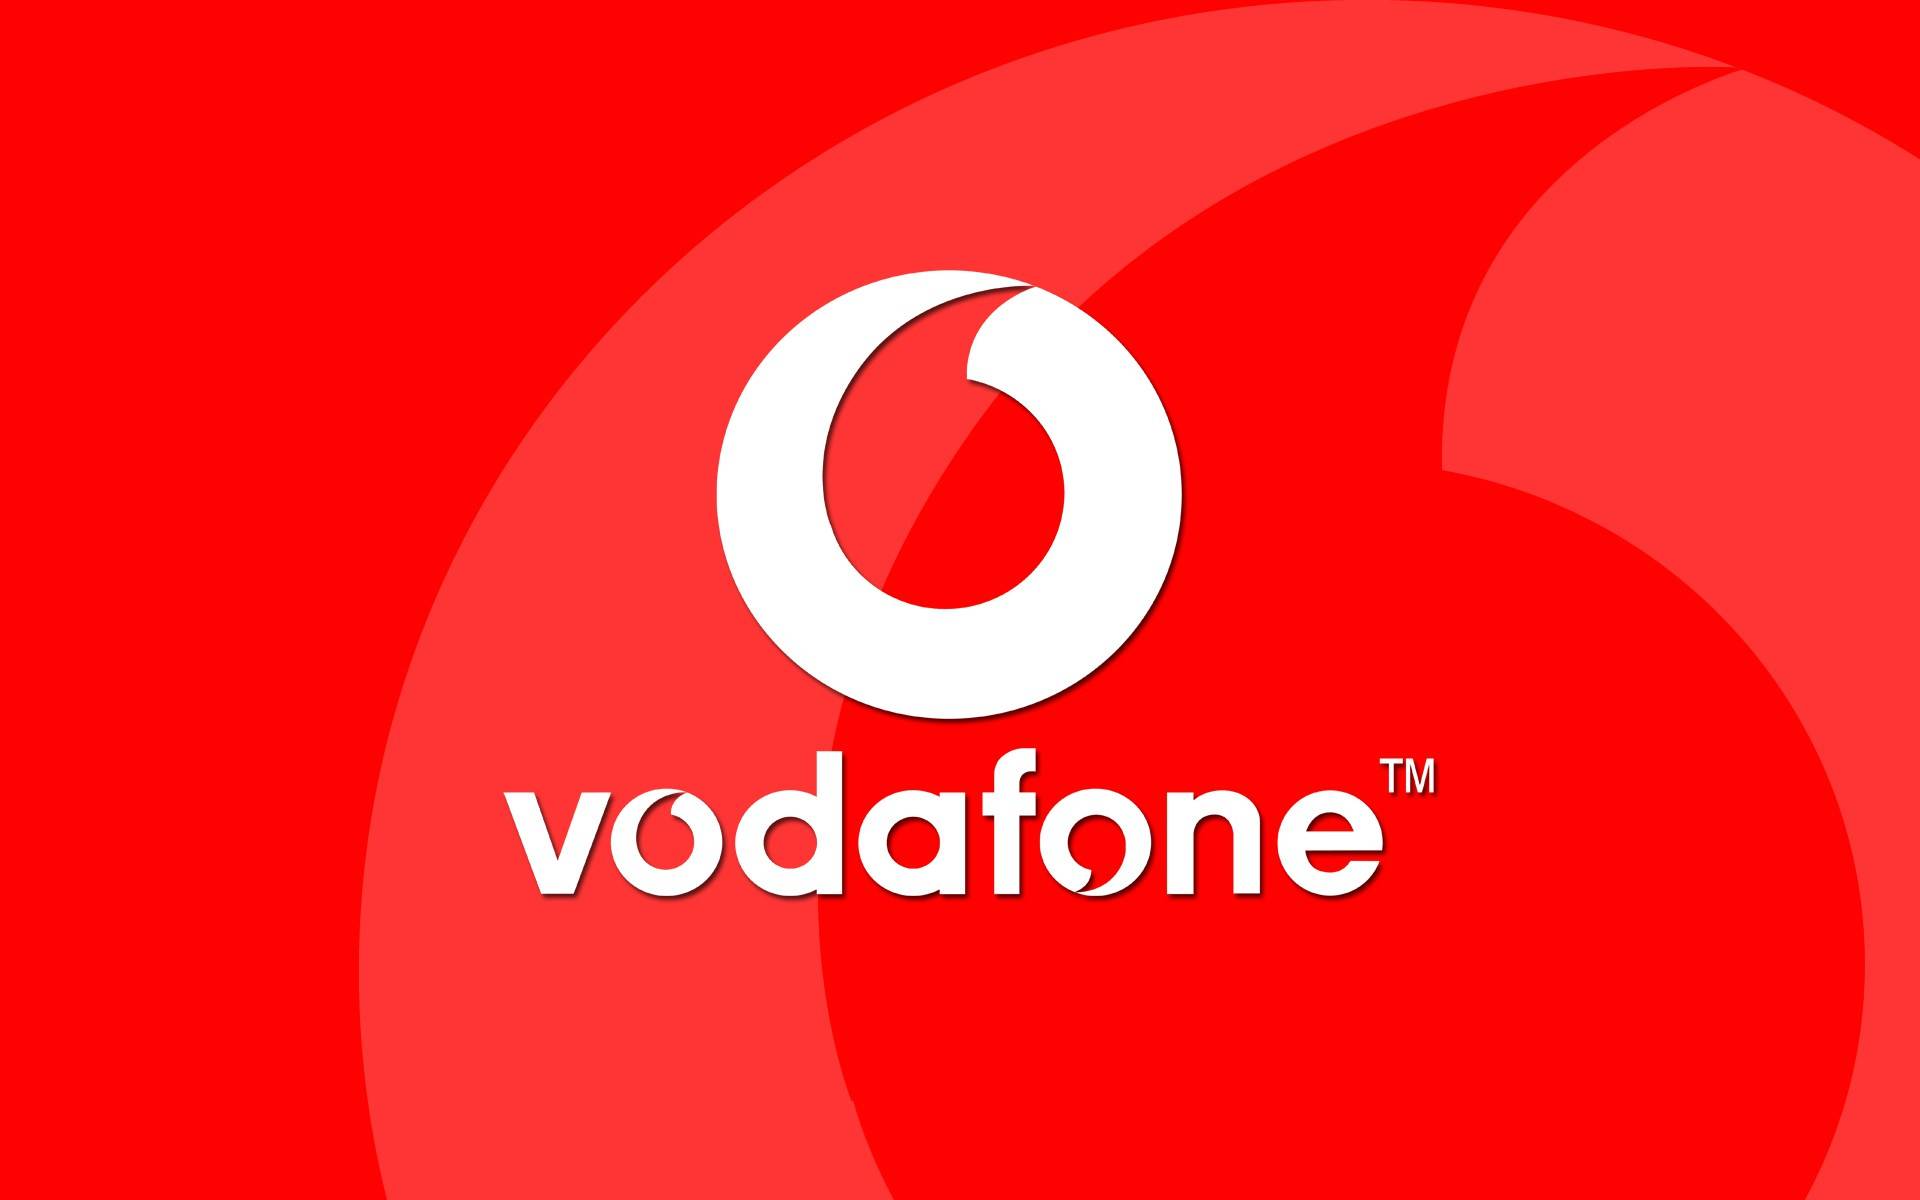 Vodafone Rumunia oferuje DUŻE promocje na dostępne w magazynie telefony komórkowe